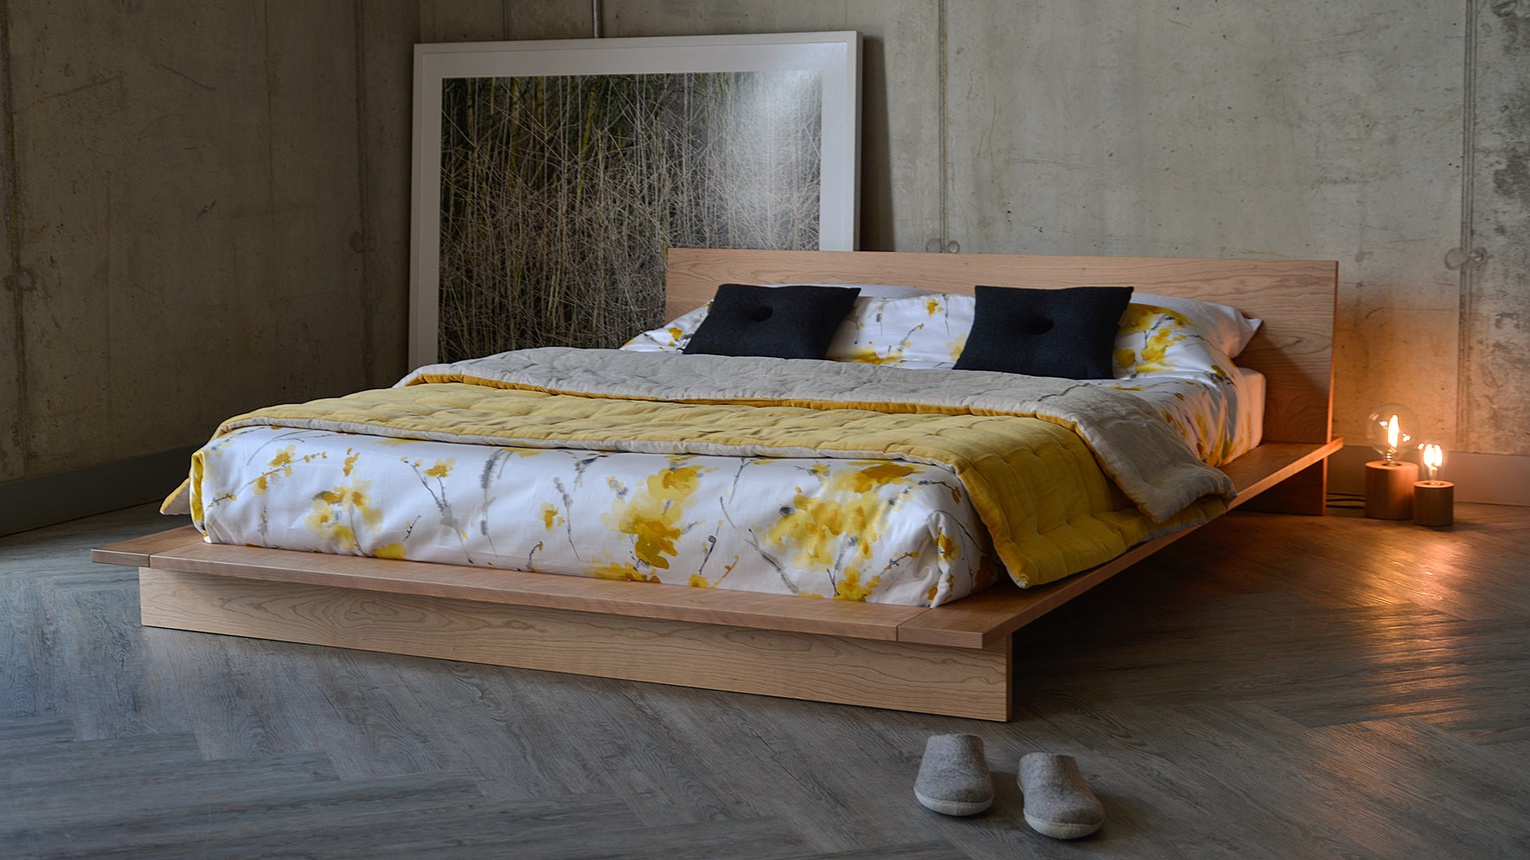 Giường gỗ Sồi (Oak) đơn giản,i đẹp mắt, thể hiện sự trẻ trung, năng động